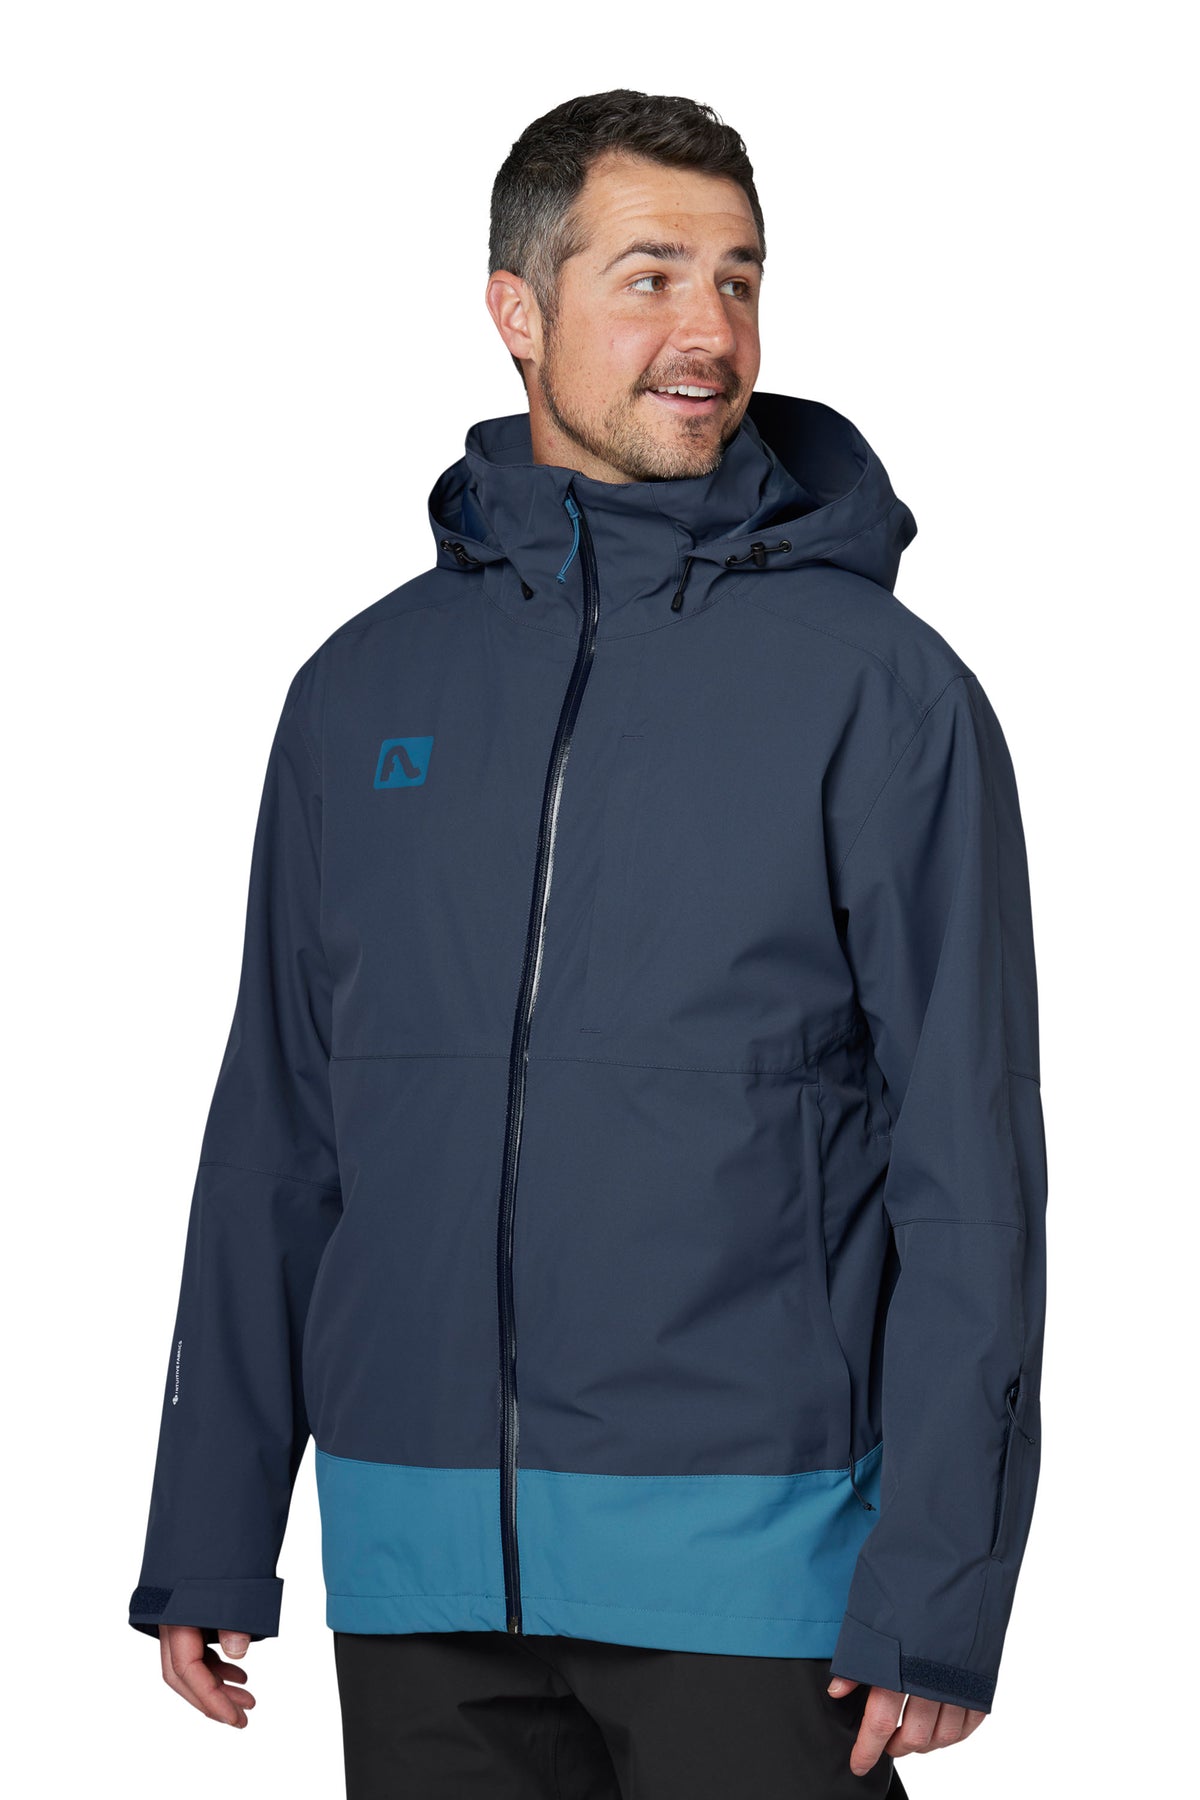 Dante Jacket - Men's Insulated Ski Jacket | Flylow – Flylow Gear